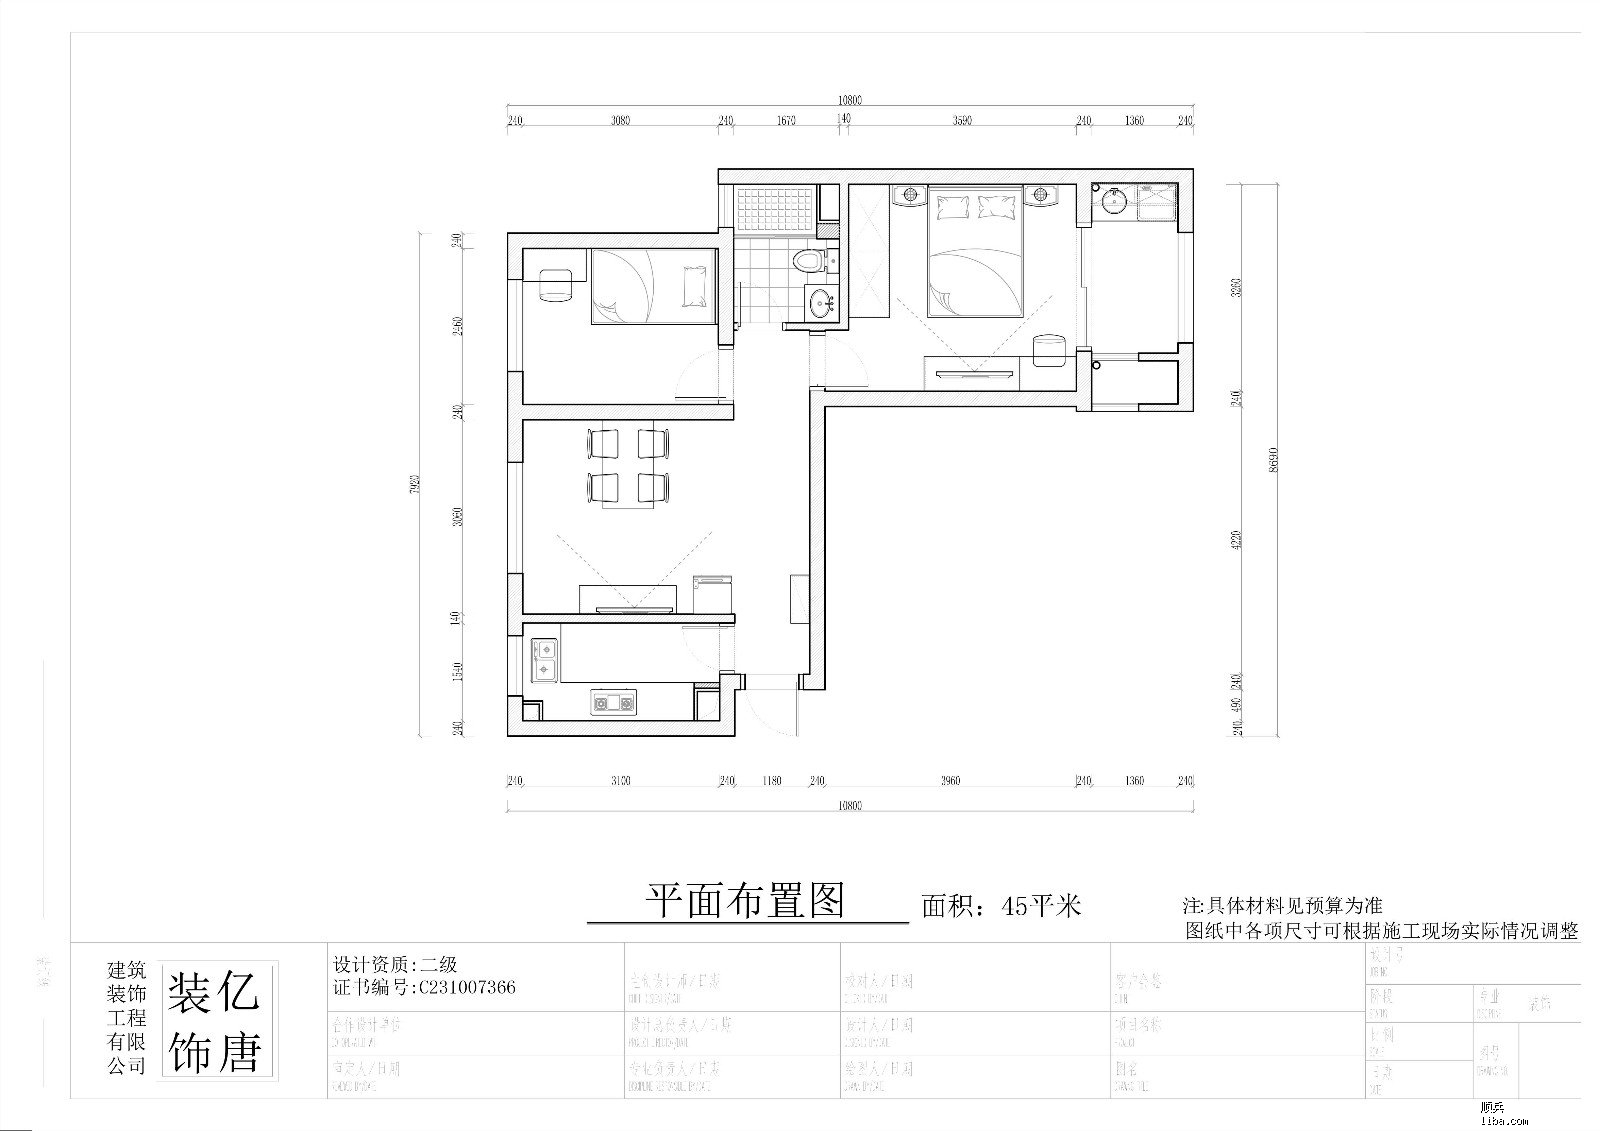 老沪闵路111弄10号2901室平面布置图-Model.jpg